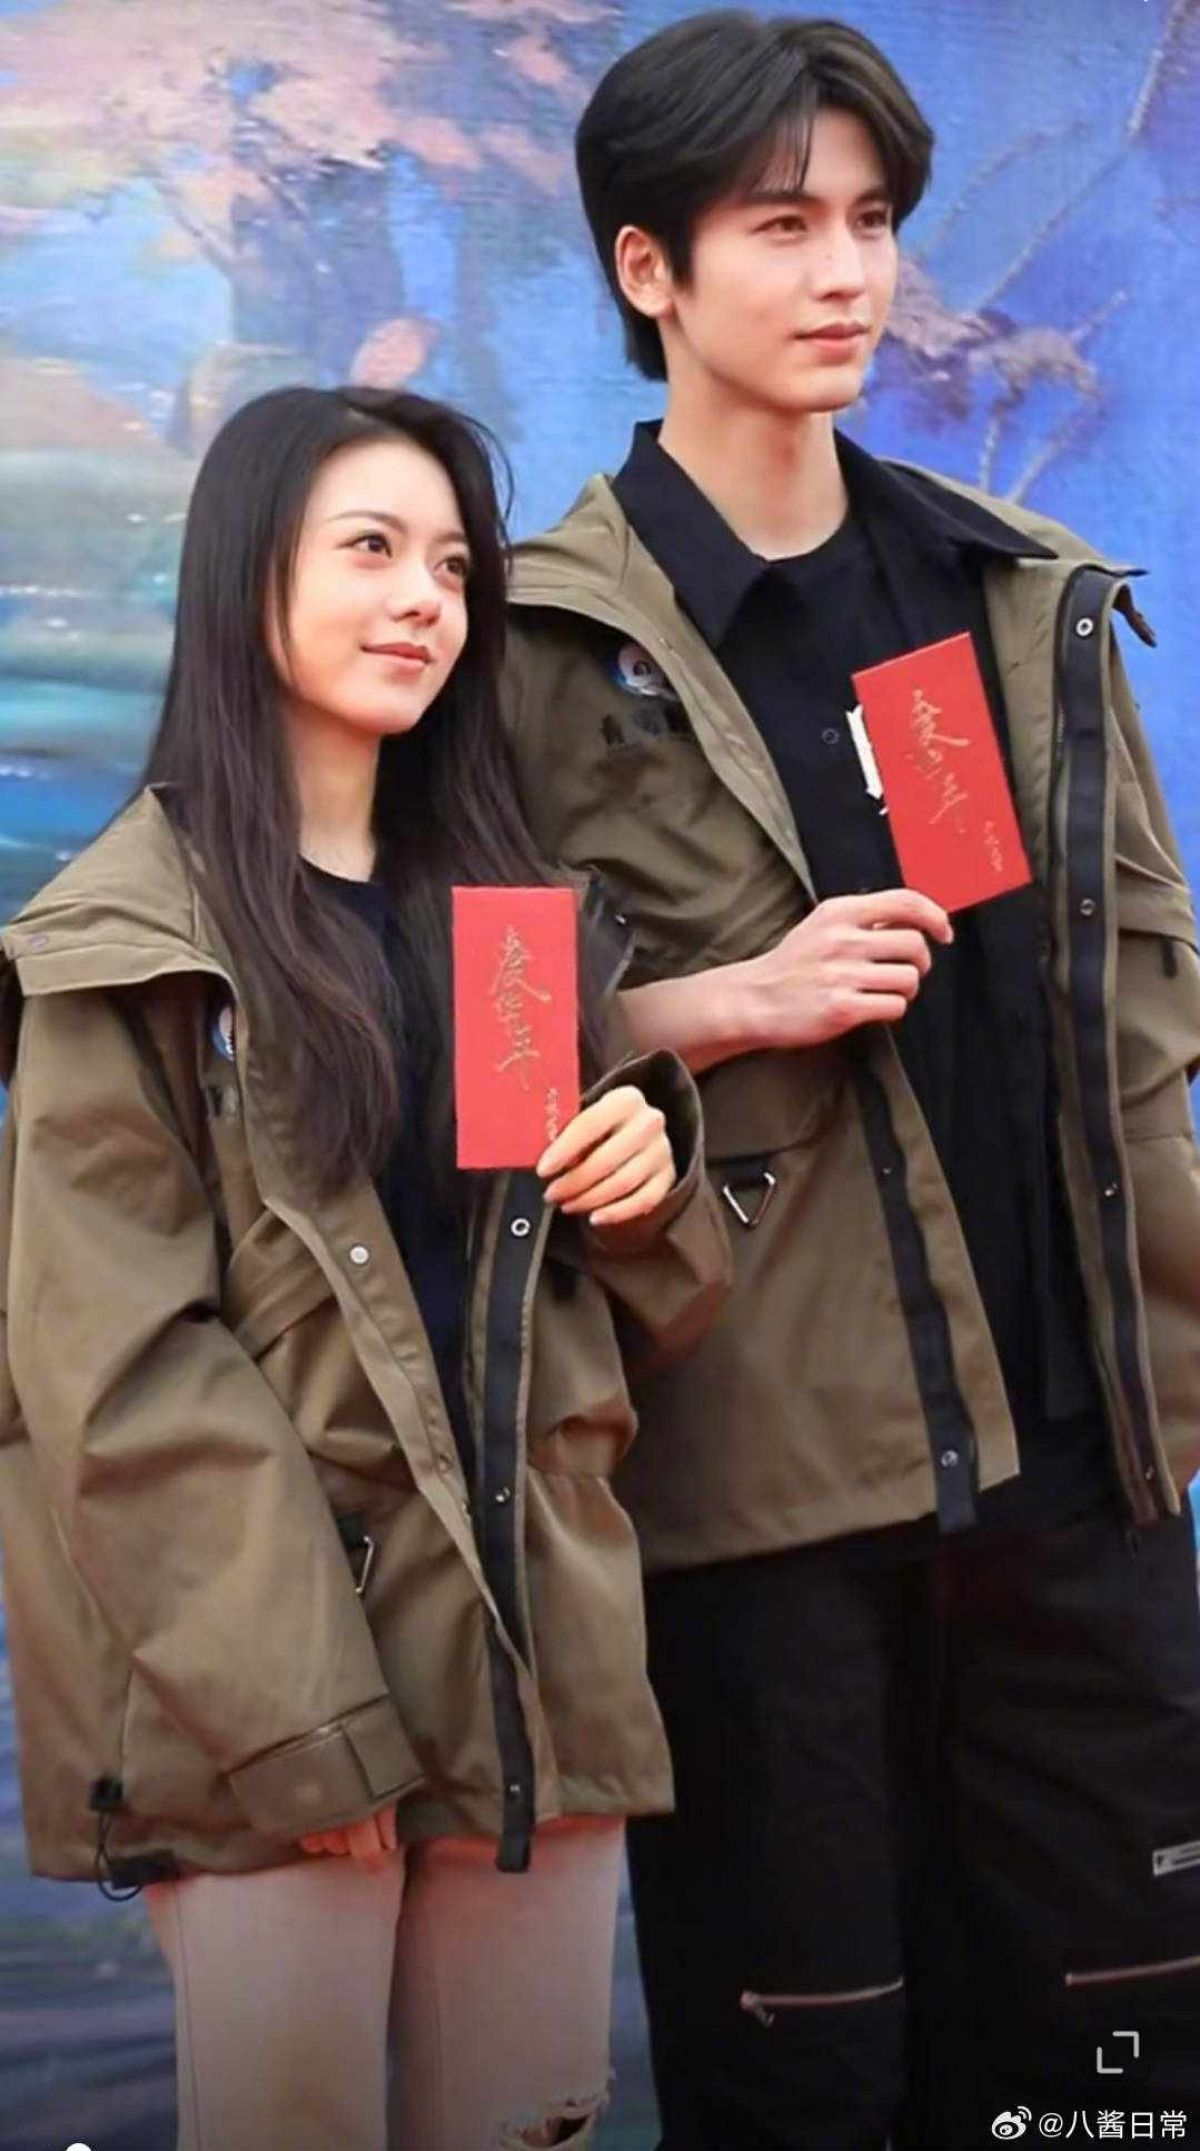 Triệu Kim Mạch và Trương Lăng Hách trong buổi lễ khai máy